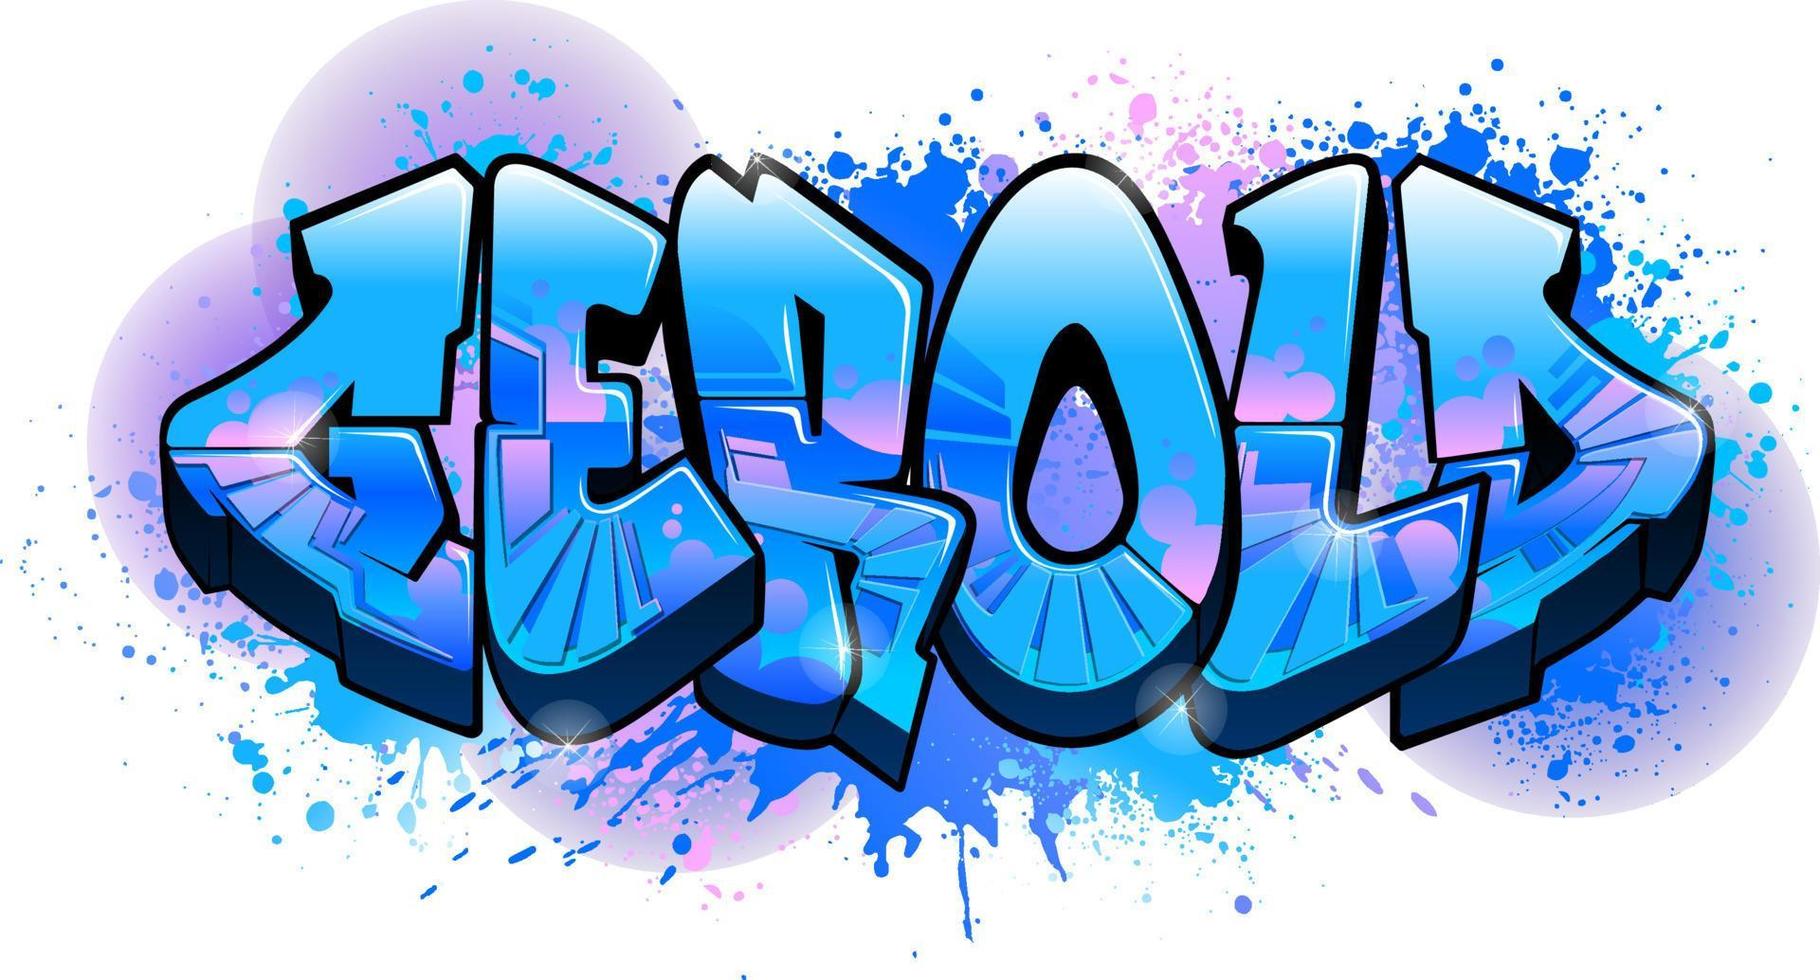 naamontwerp in graffiti-stijl - gerold vector